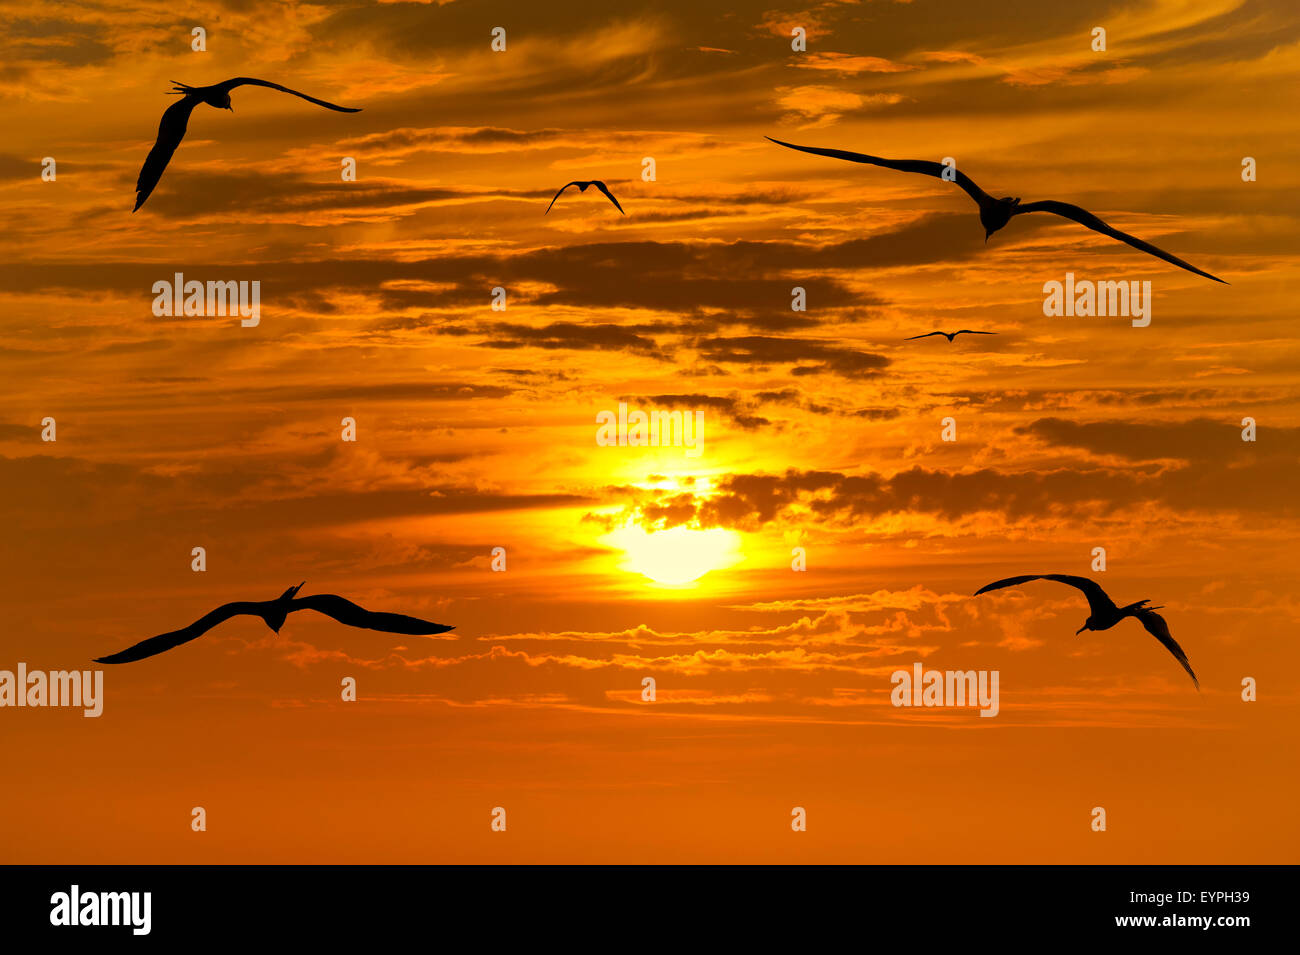 Silhouette d'oiseaux est un groupe d'oiseaux volant découpé avec un beau coucher de soleil jaune et orange éclatant en arrière-plan. Banque D'Images